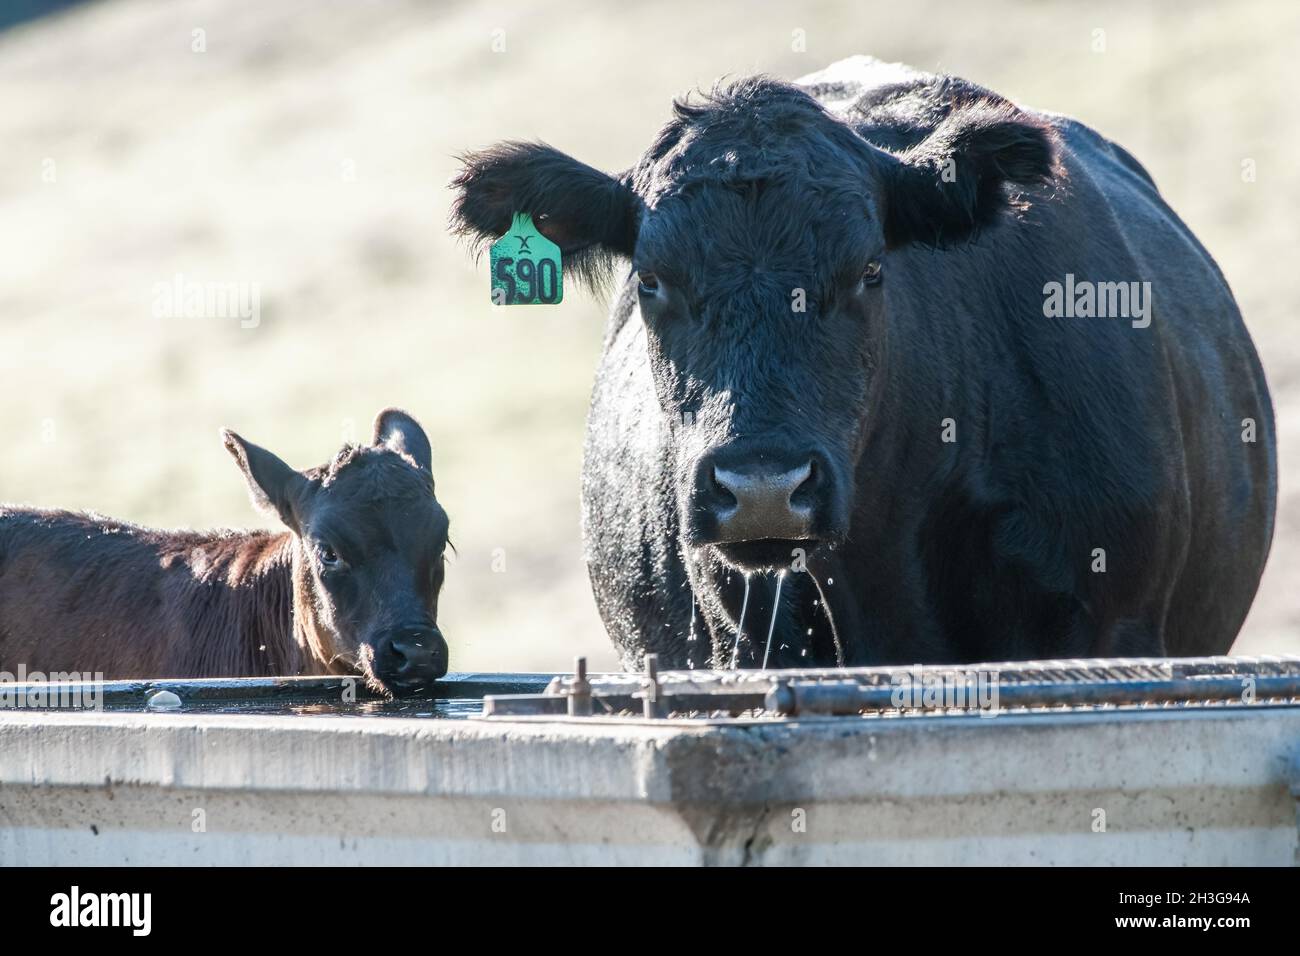 Heimische schwarze angus-Rinder, eine Mutterkuh und ein Kalb, trinken an einem heißen Tag in den kalifornischen Hügeln auf dem Westmantel der USA Wasser aus einem Trog. Stockfoto